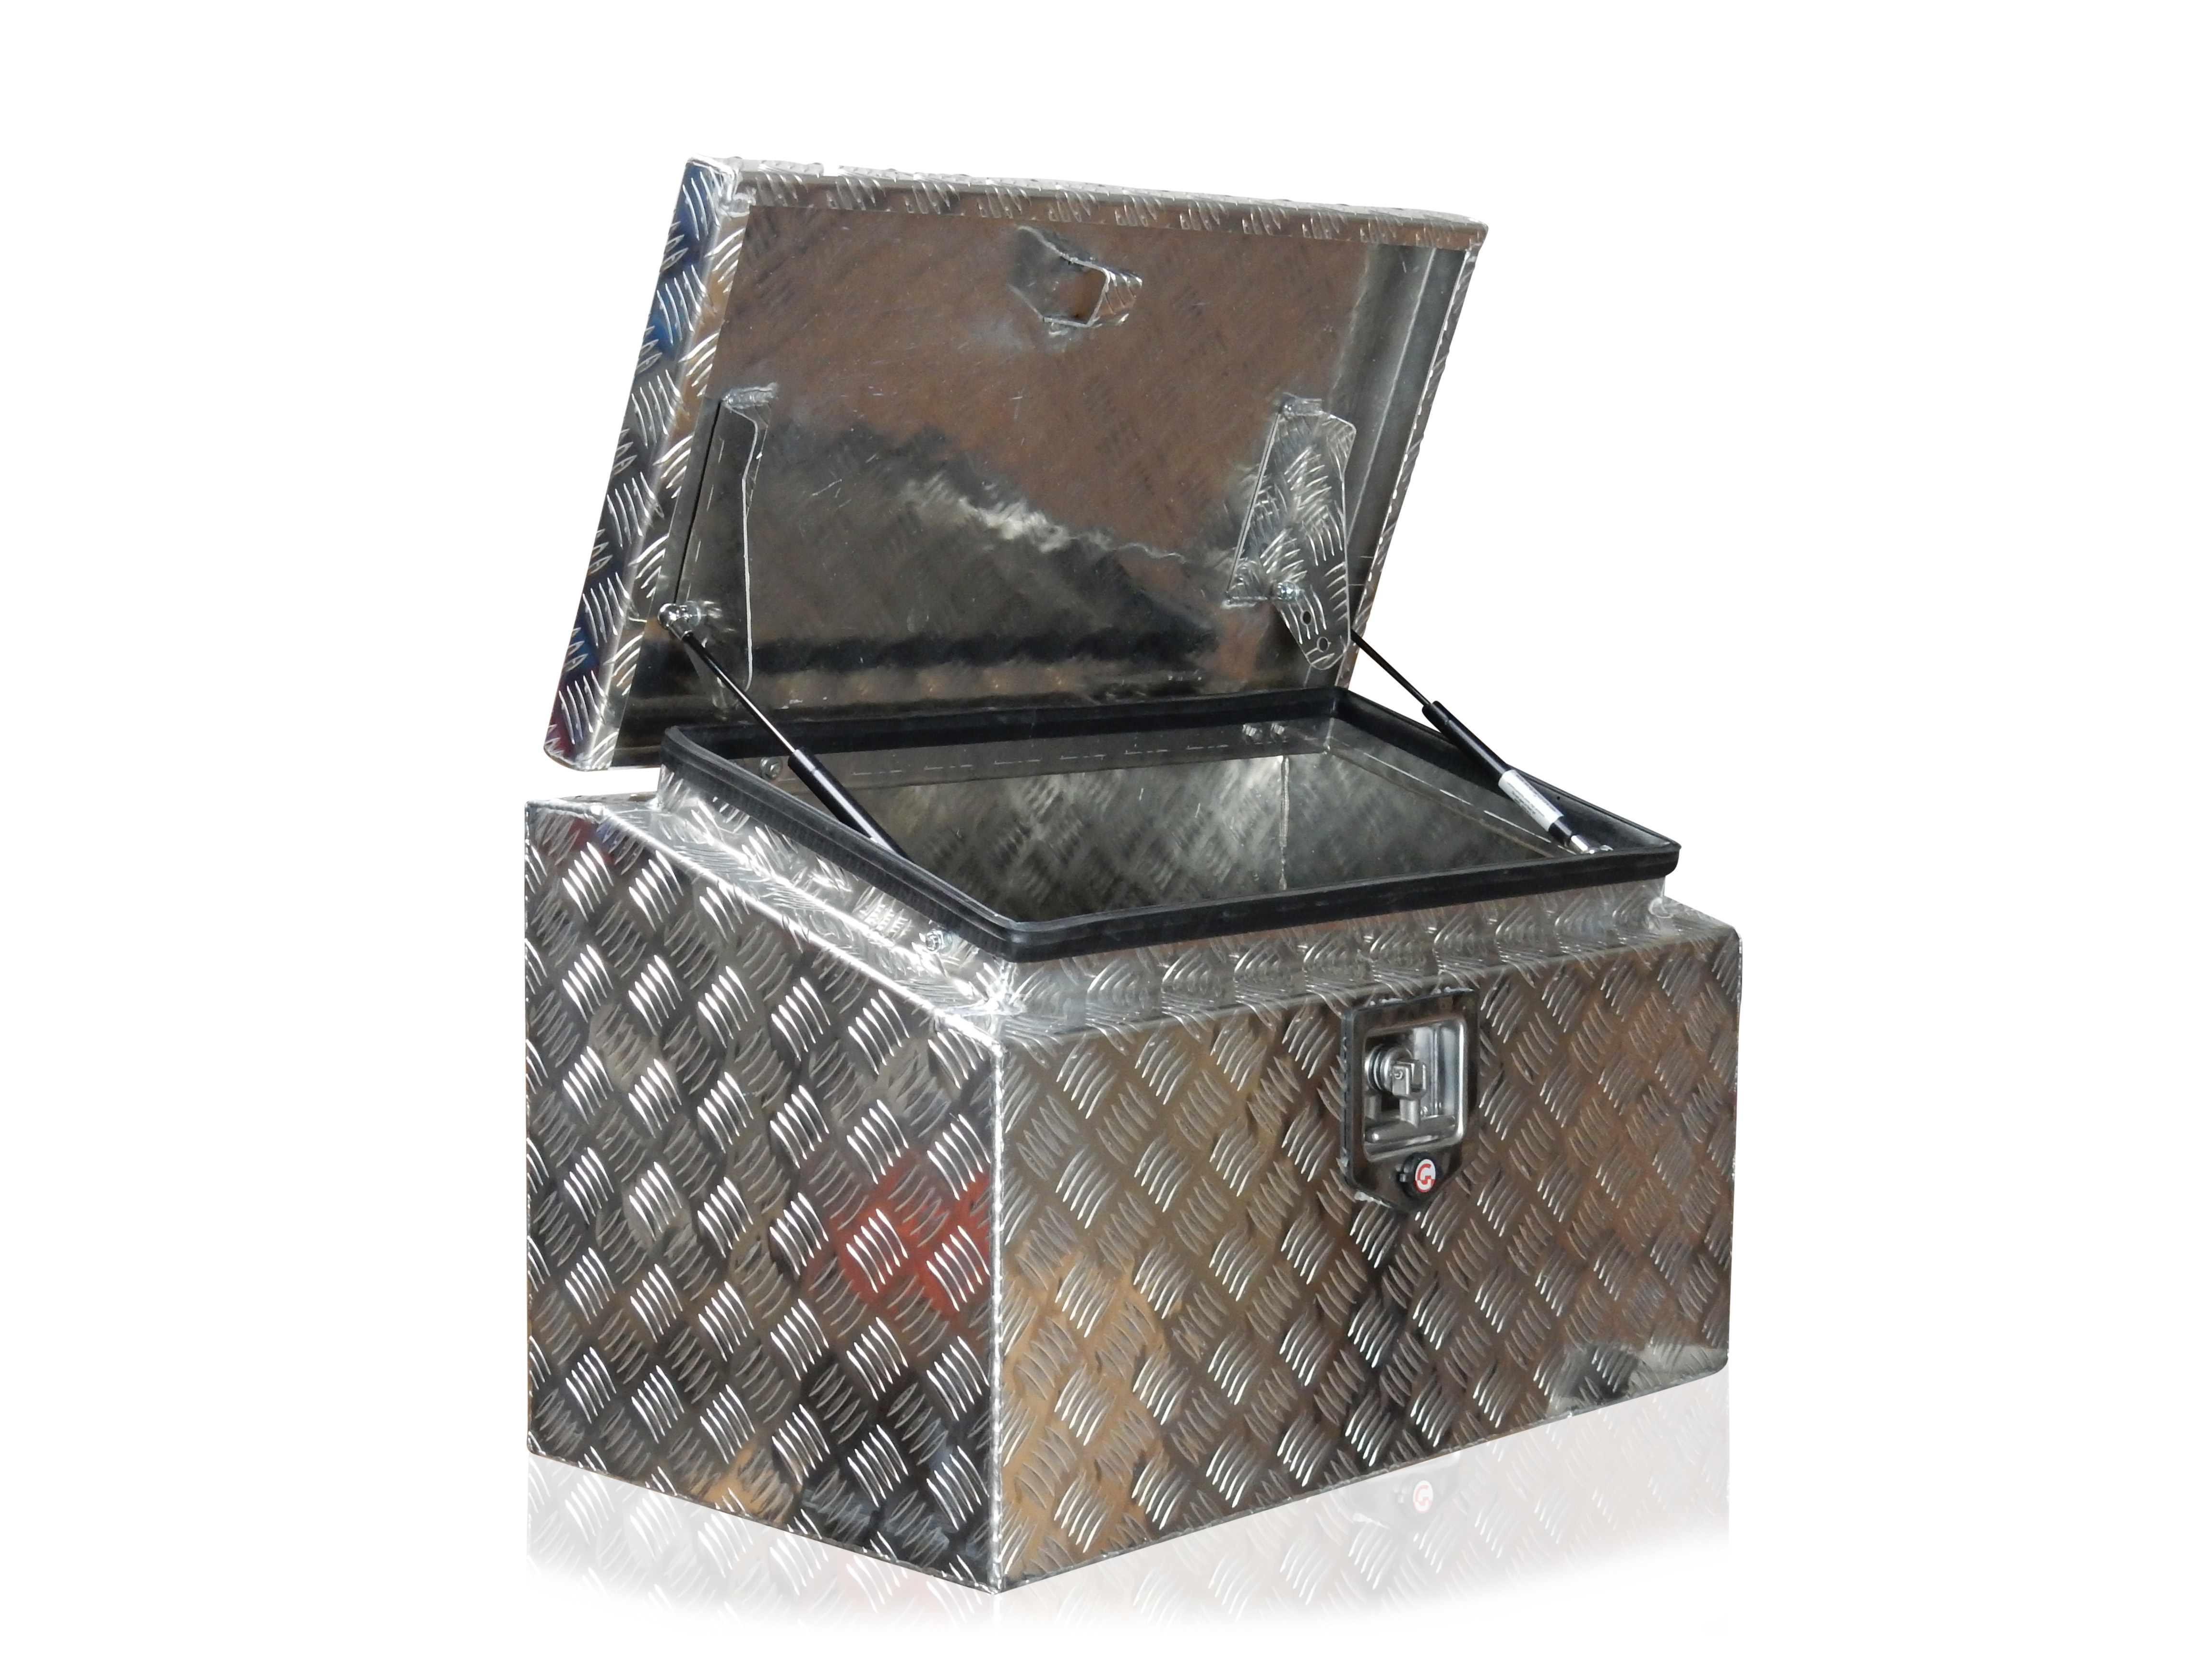 Pritschenkasten - Pritschenbox Aluminium, Deckel abgeschrägt | 700x450x400  | 60-000-320 | Schneidebretter